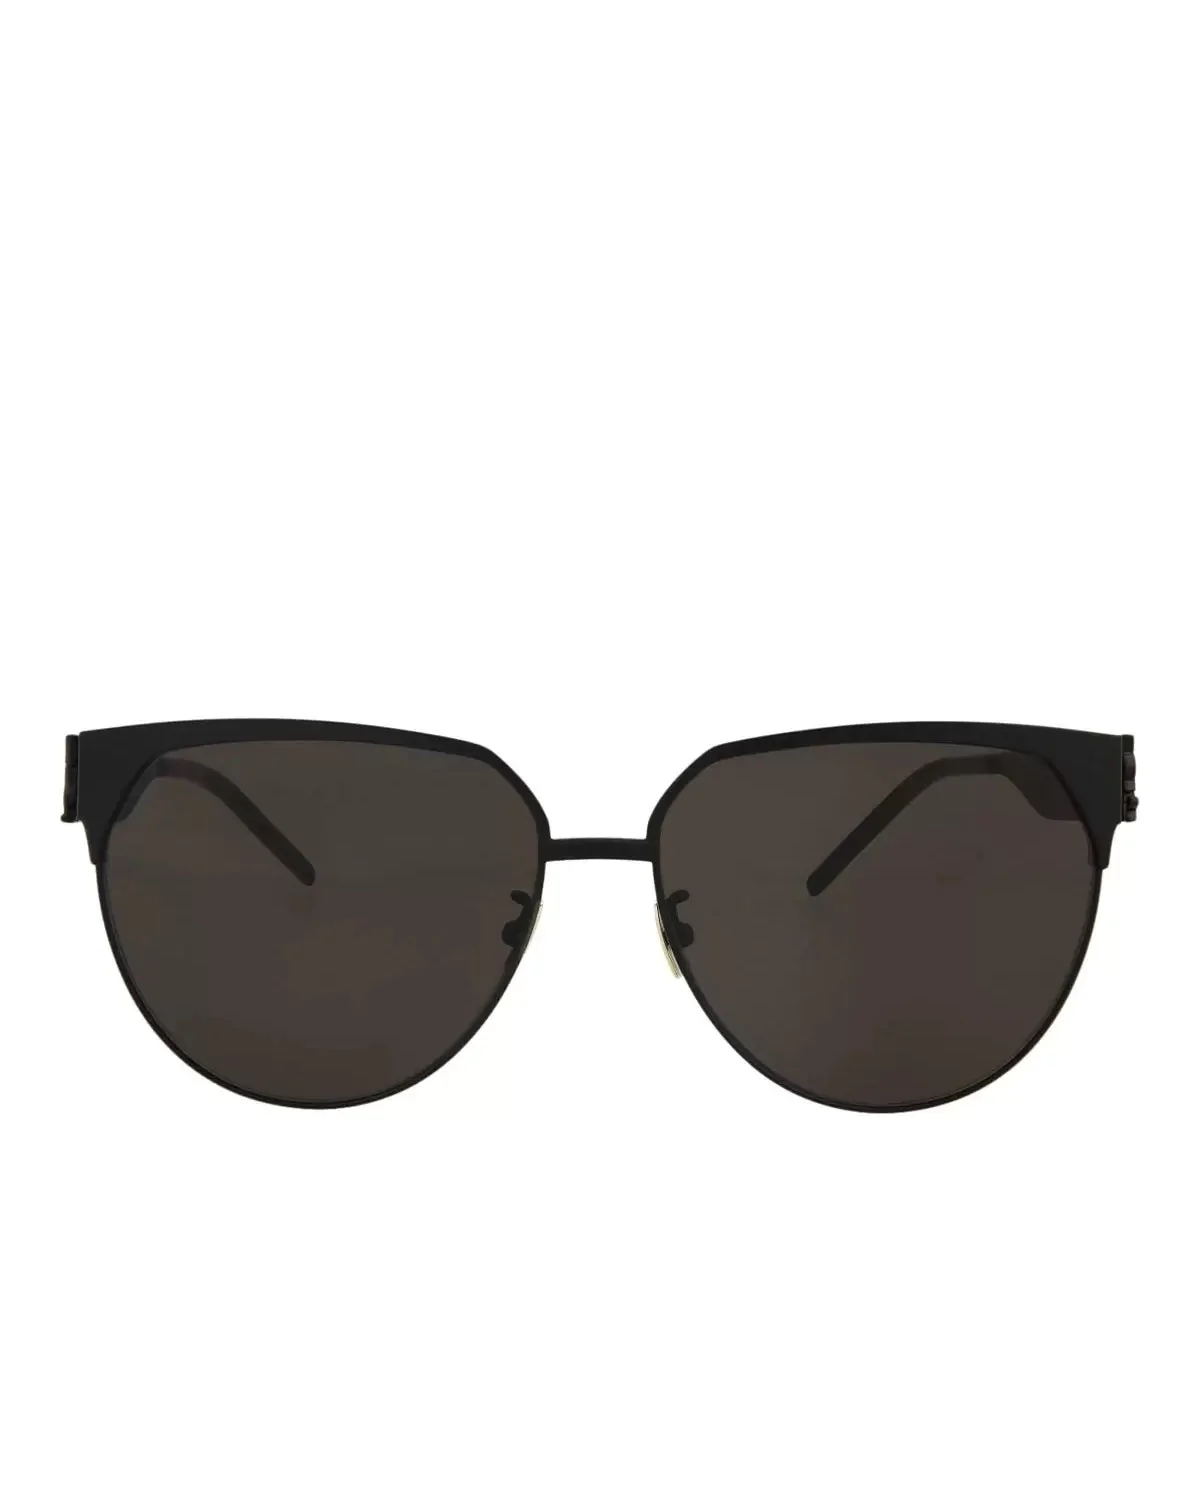 Saint Laurent SL M43/F 004 Round Sunglasses